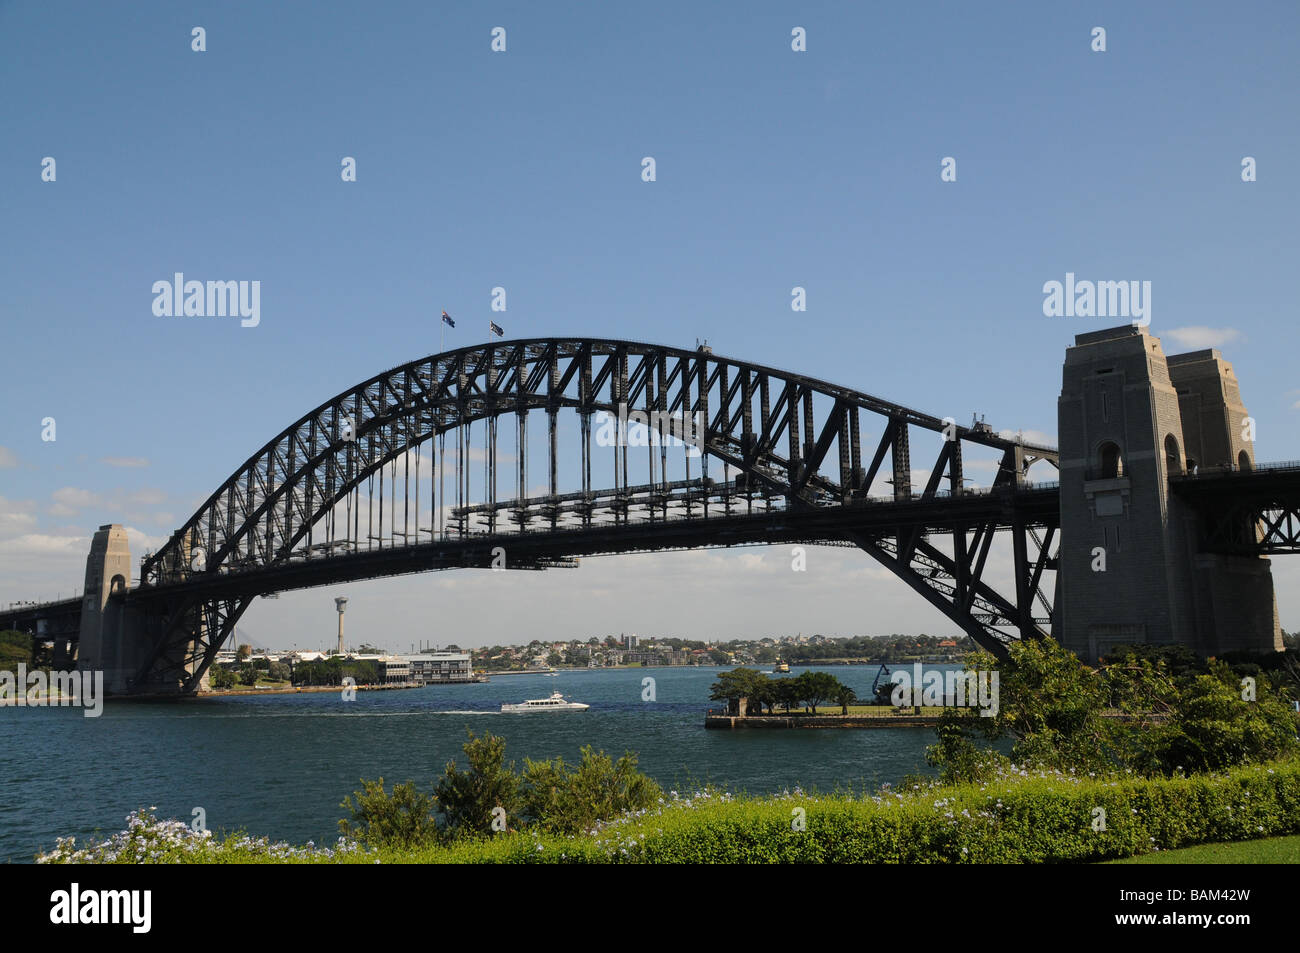 Sydney, Australie Vue de Sydney Harbour Bridge. Icônes de l'Australie, le pont est inauguré en 1932, l'Opéra en 2003. Banque D'Images